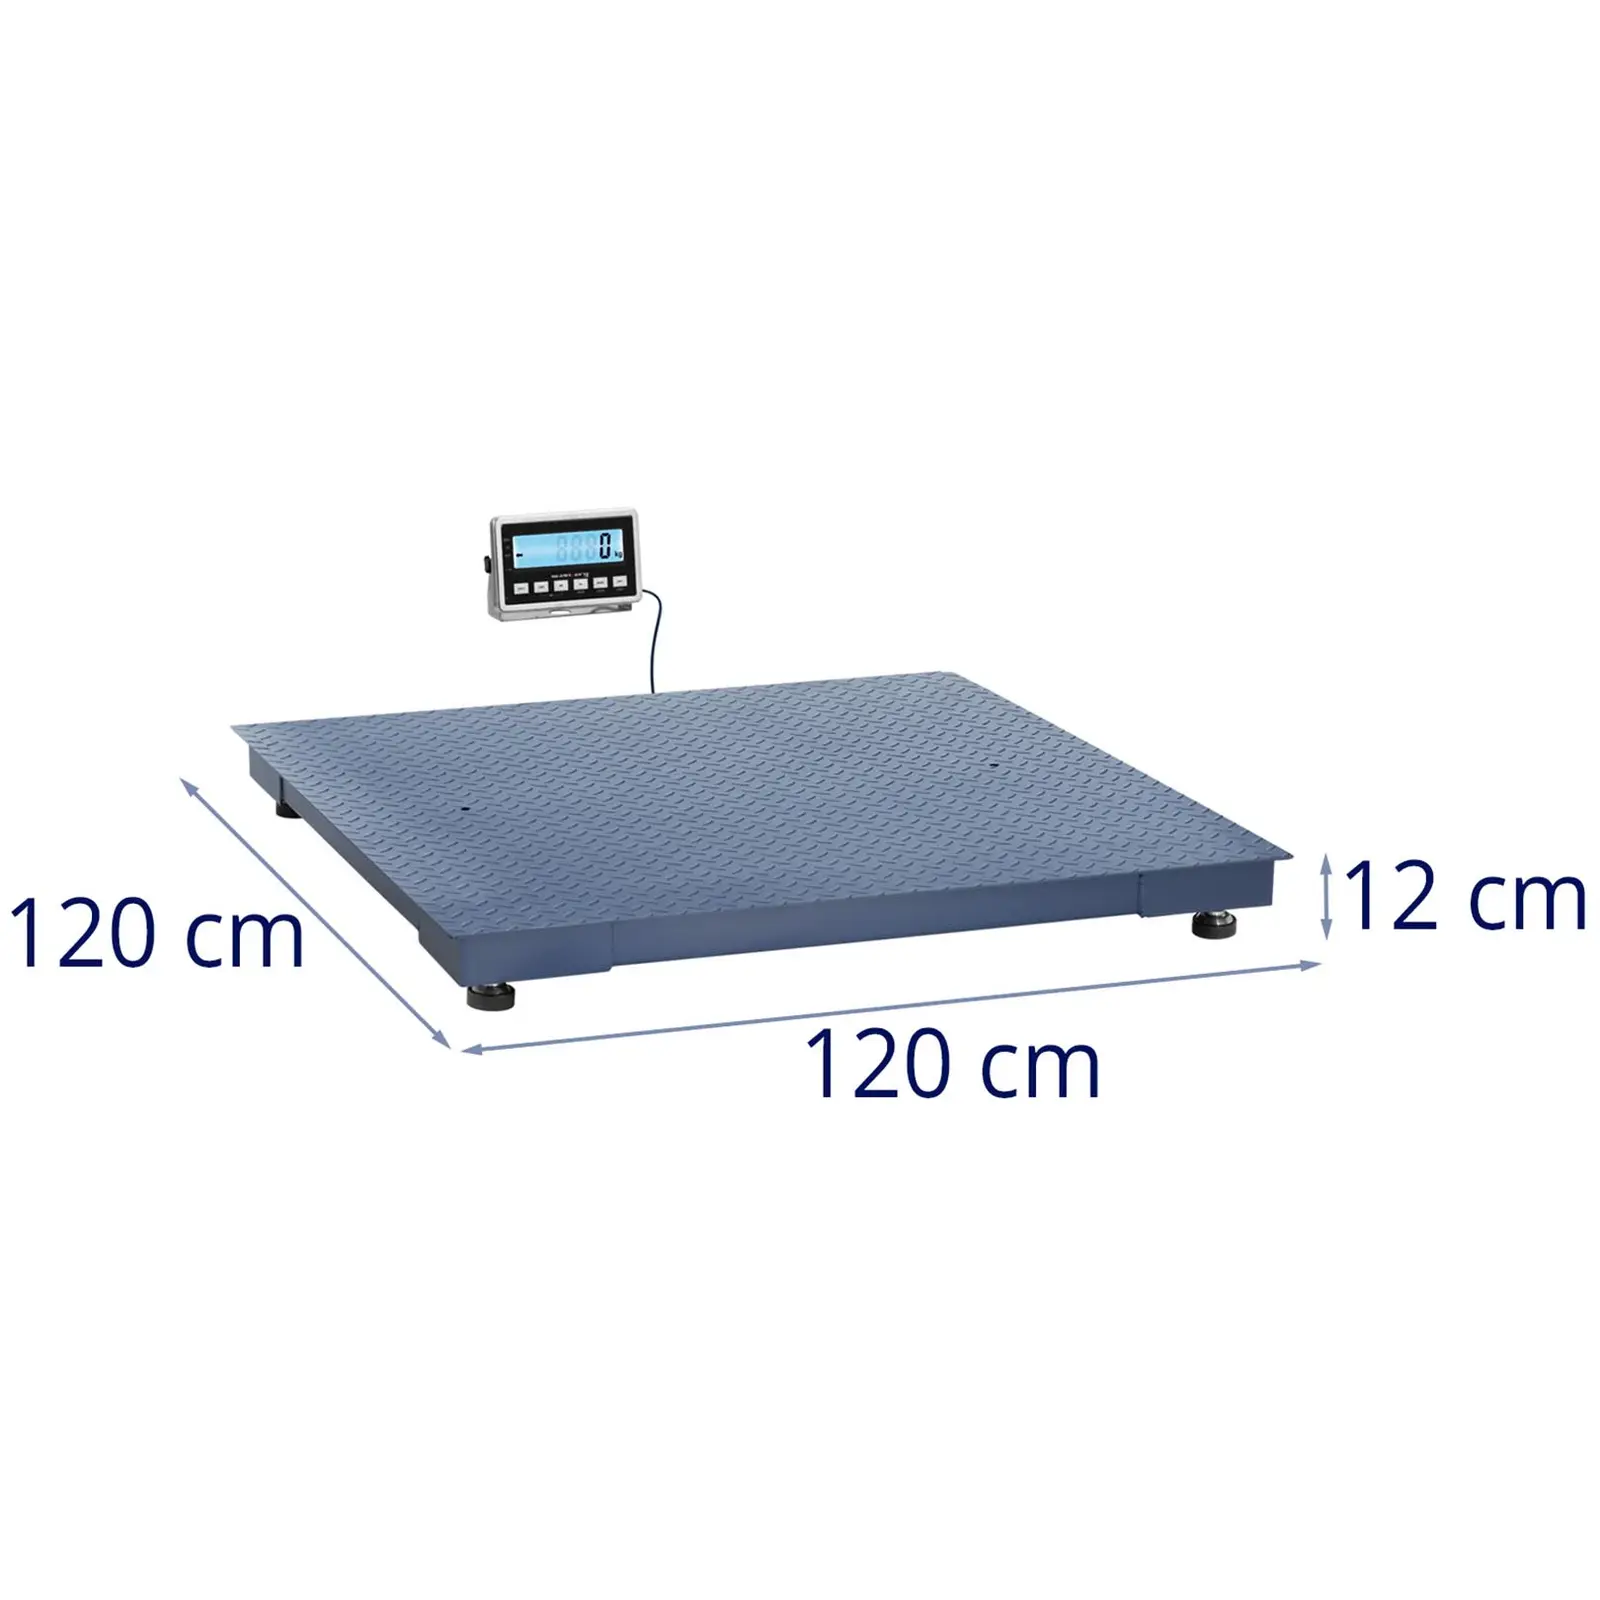 Talna tehtnica - 3000 kg / 1 kg - 1200 x 1200 mm - LCD